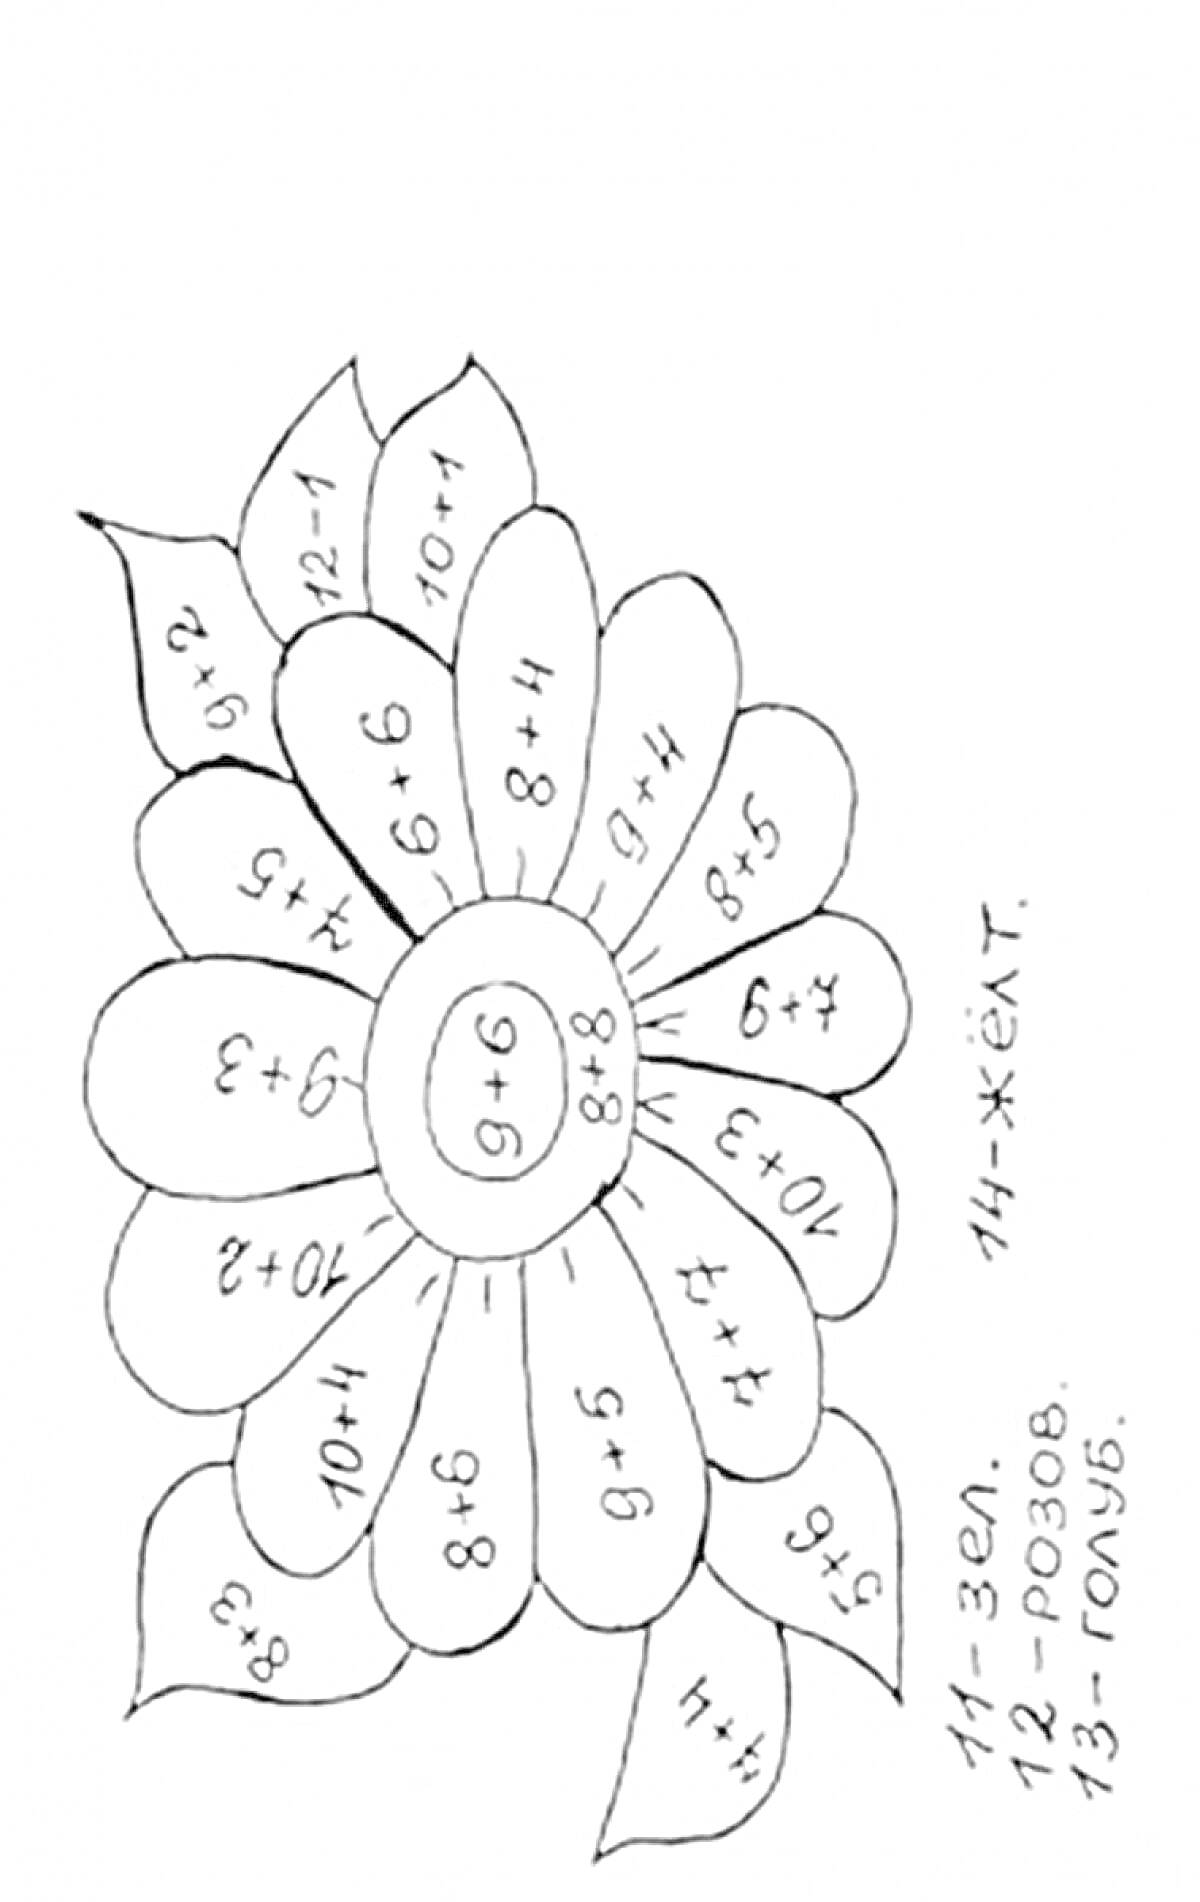 Раскраска Цветик семицветик с математическими примерами и подписями цветов